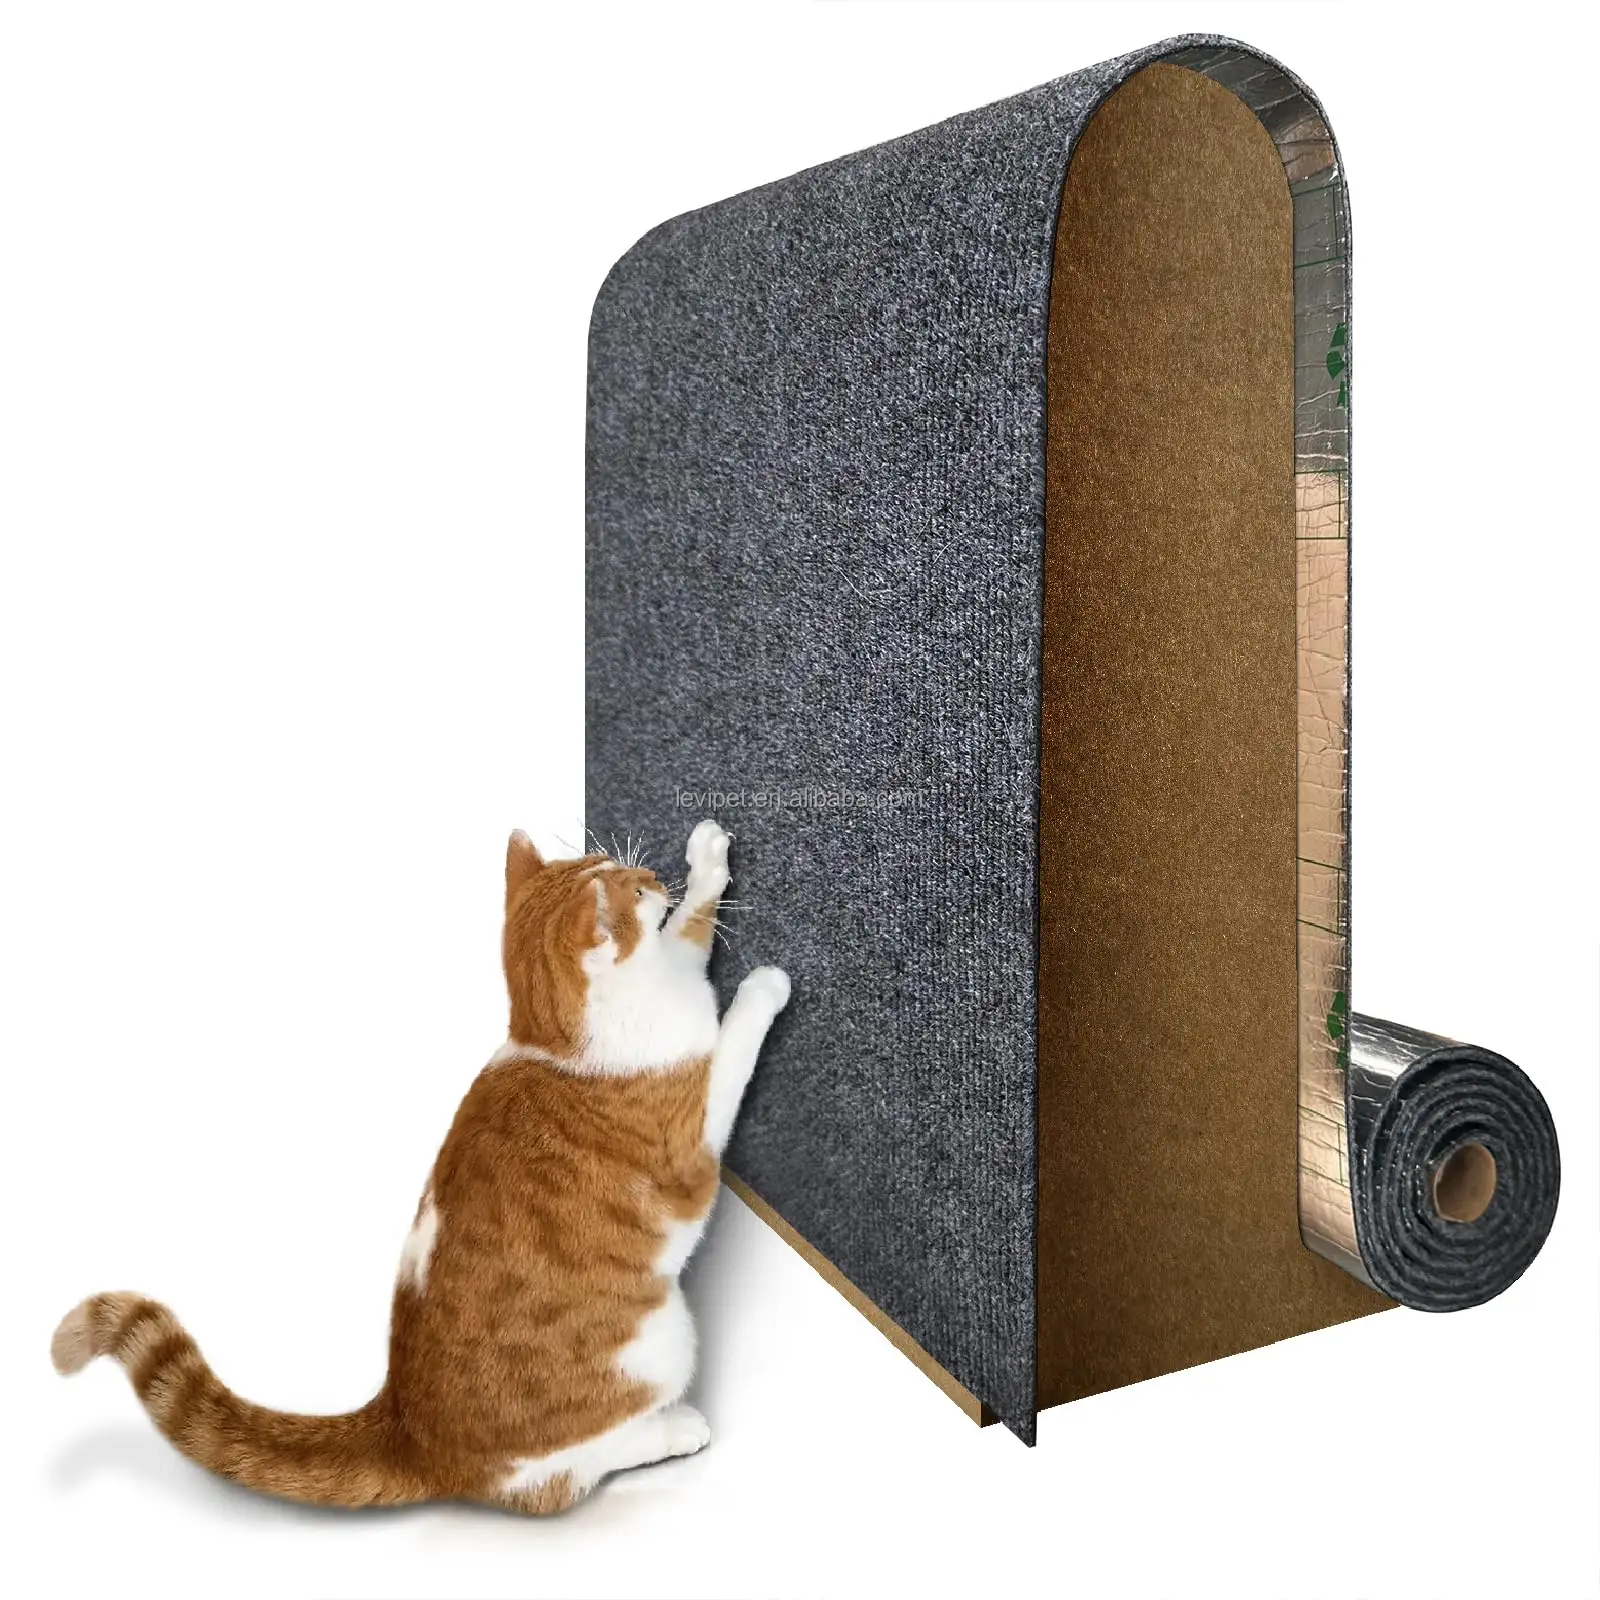 Tapete de arranhar para gatos, tapete autoadesivo DIY para arranhar gatos, sofá, móveis, parede, árvore e gatos